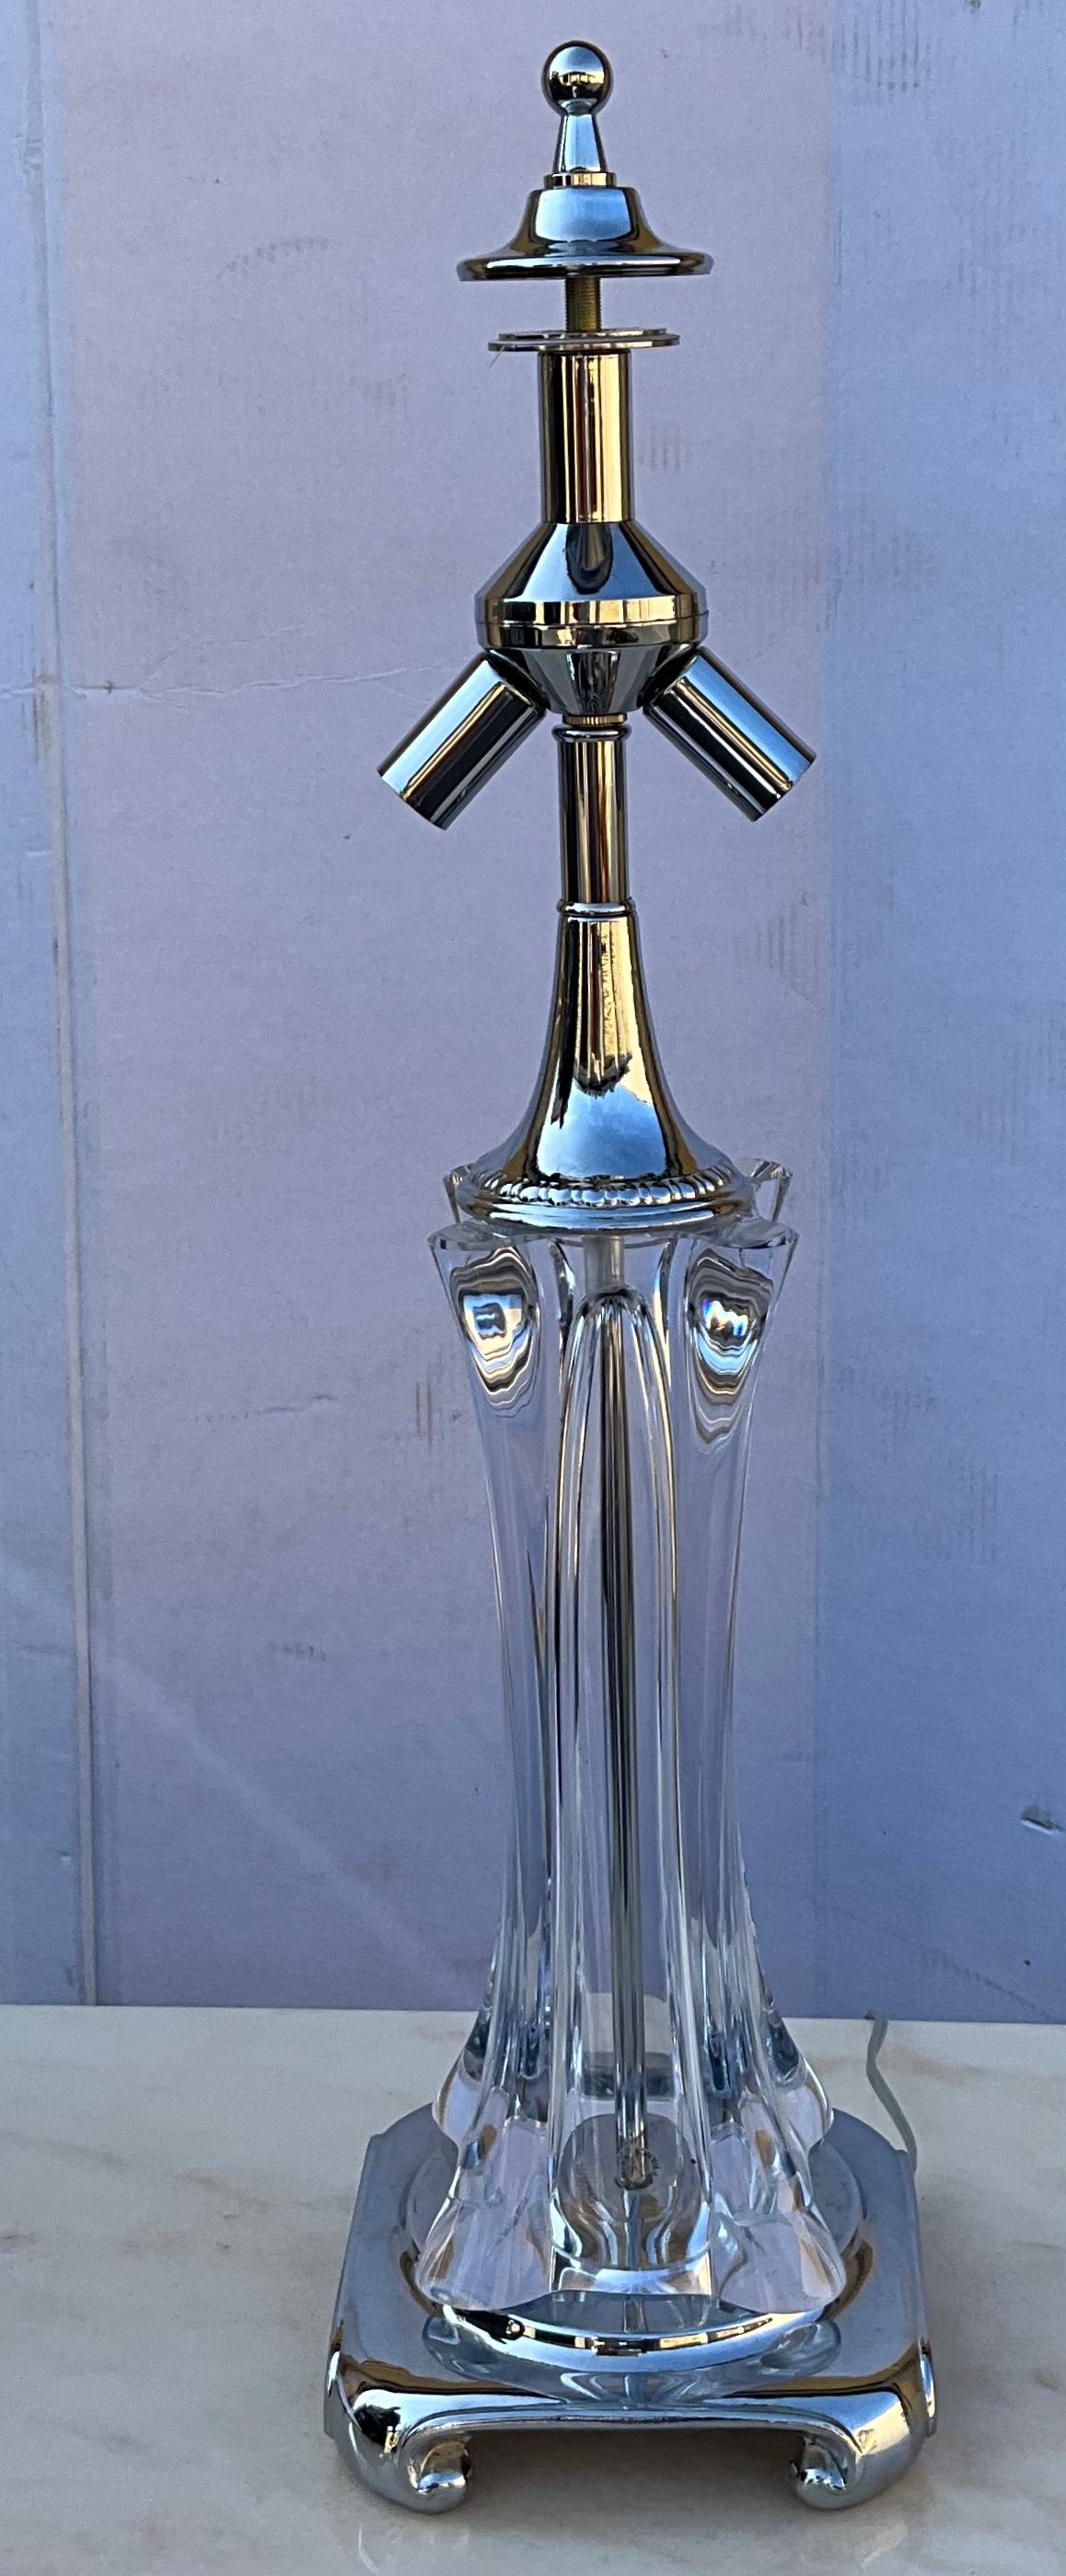 French Organic Modern Art Glass Cofrac Art Verrier Crystal & Chrome Table Lamp For Sale 2